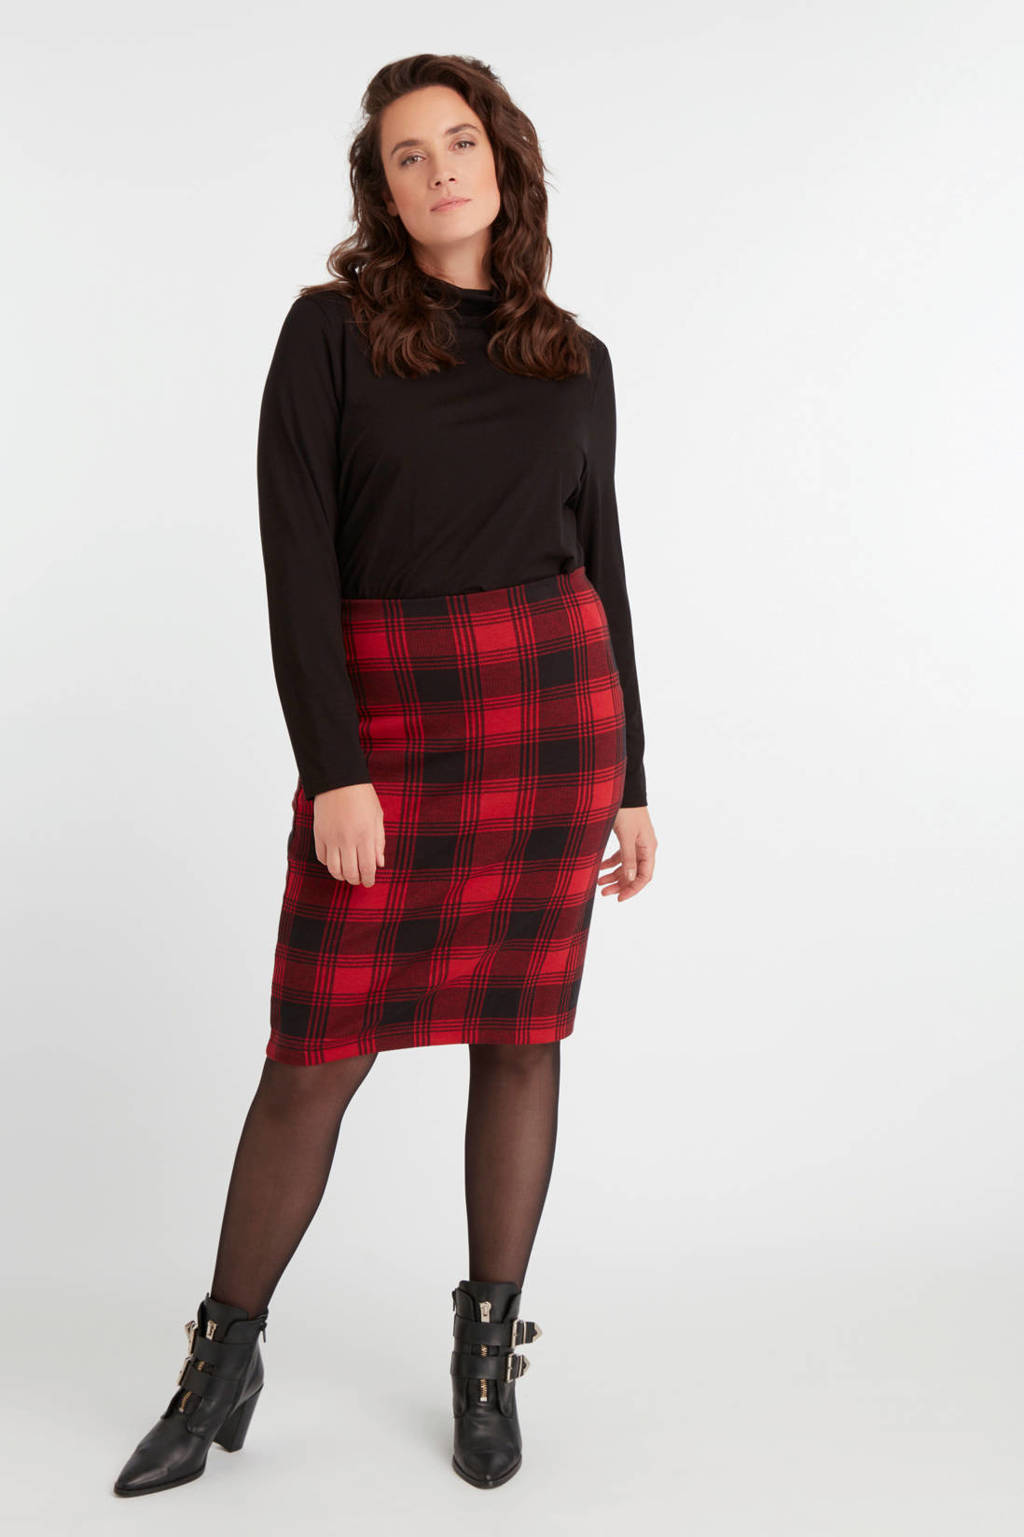 Stewart Island Vriend verdrietig MS Mode geruite rok rood/zwart | wehkamp